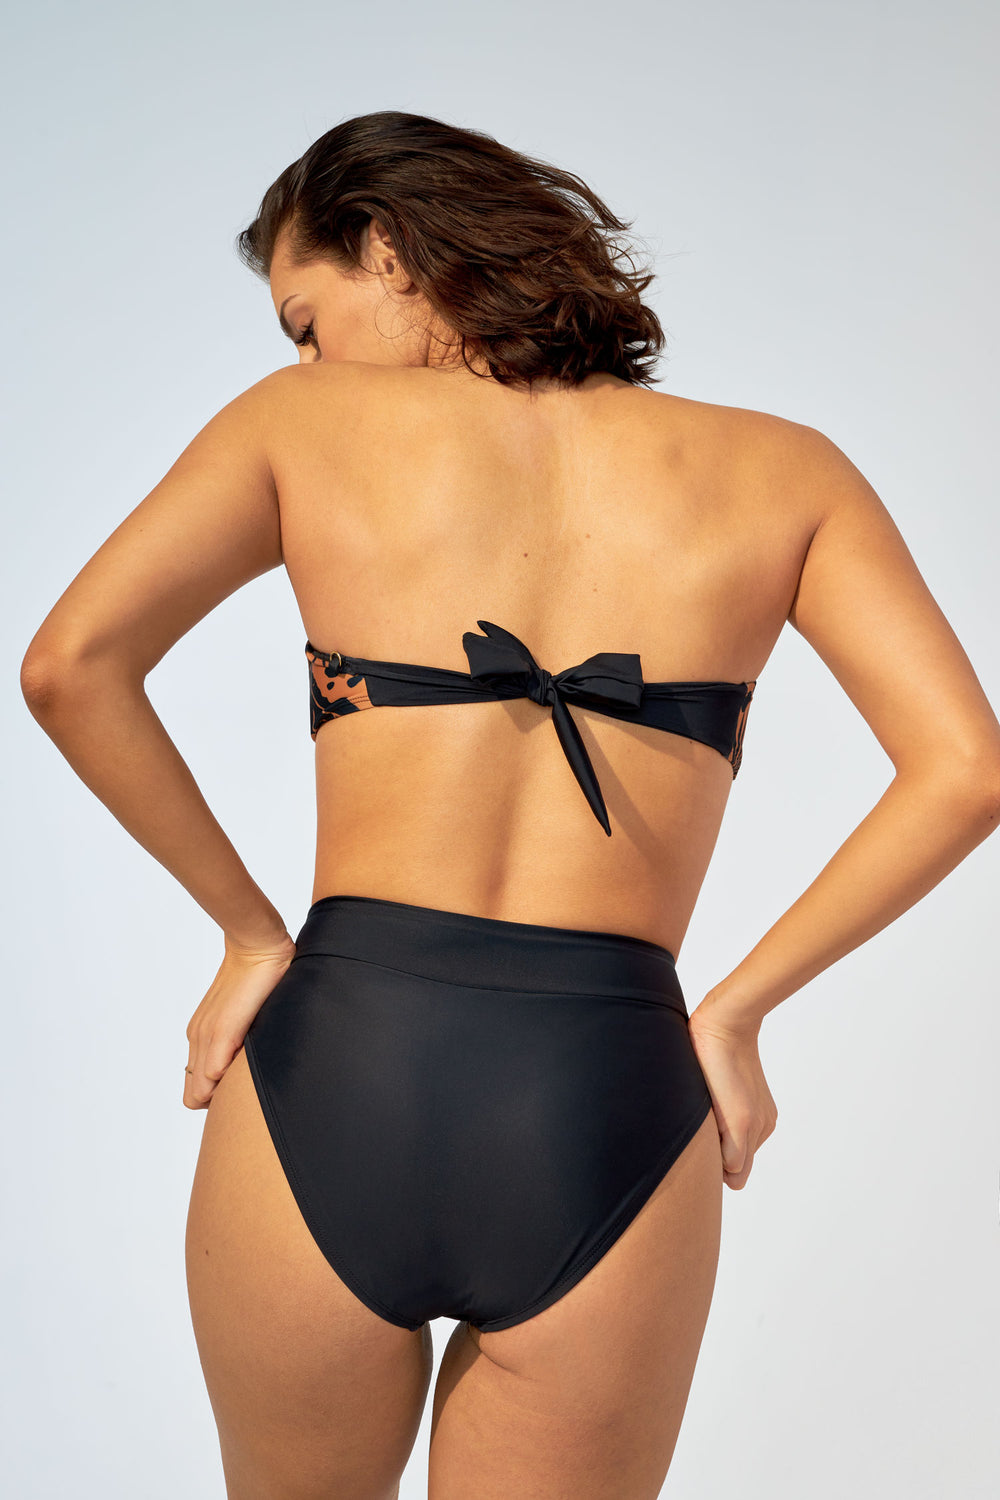 MARINA – Bikini top in Black and mesh – Selfish swimwear